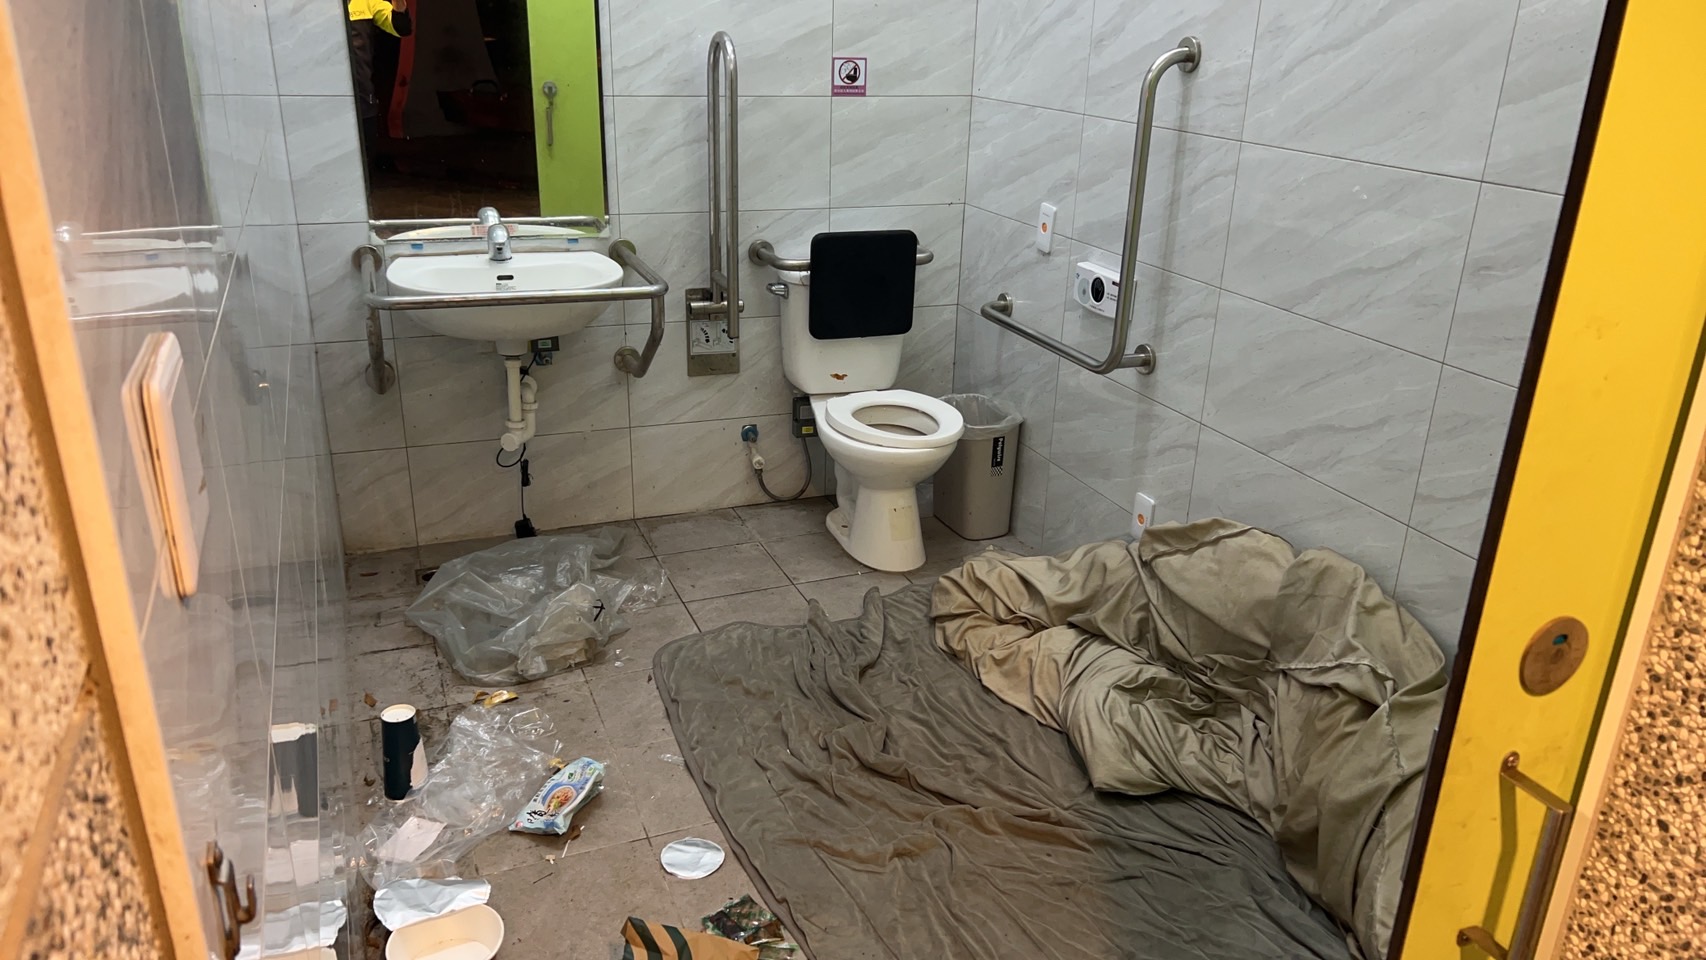 新竹县竹北市豆子埔公园残障厕所内有棉被、生活用品和吃完食物，且门遭反锁，疑似有街友长期占住。图／民众提供